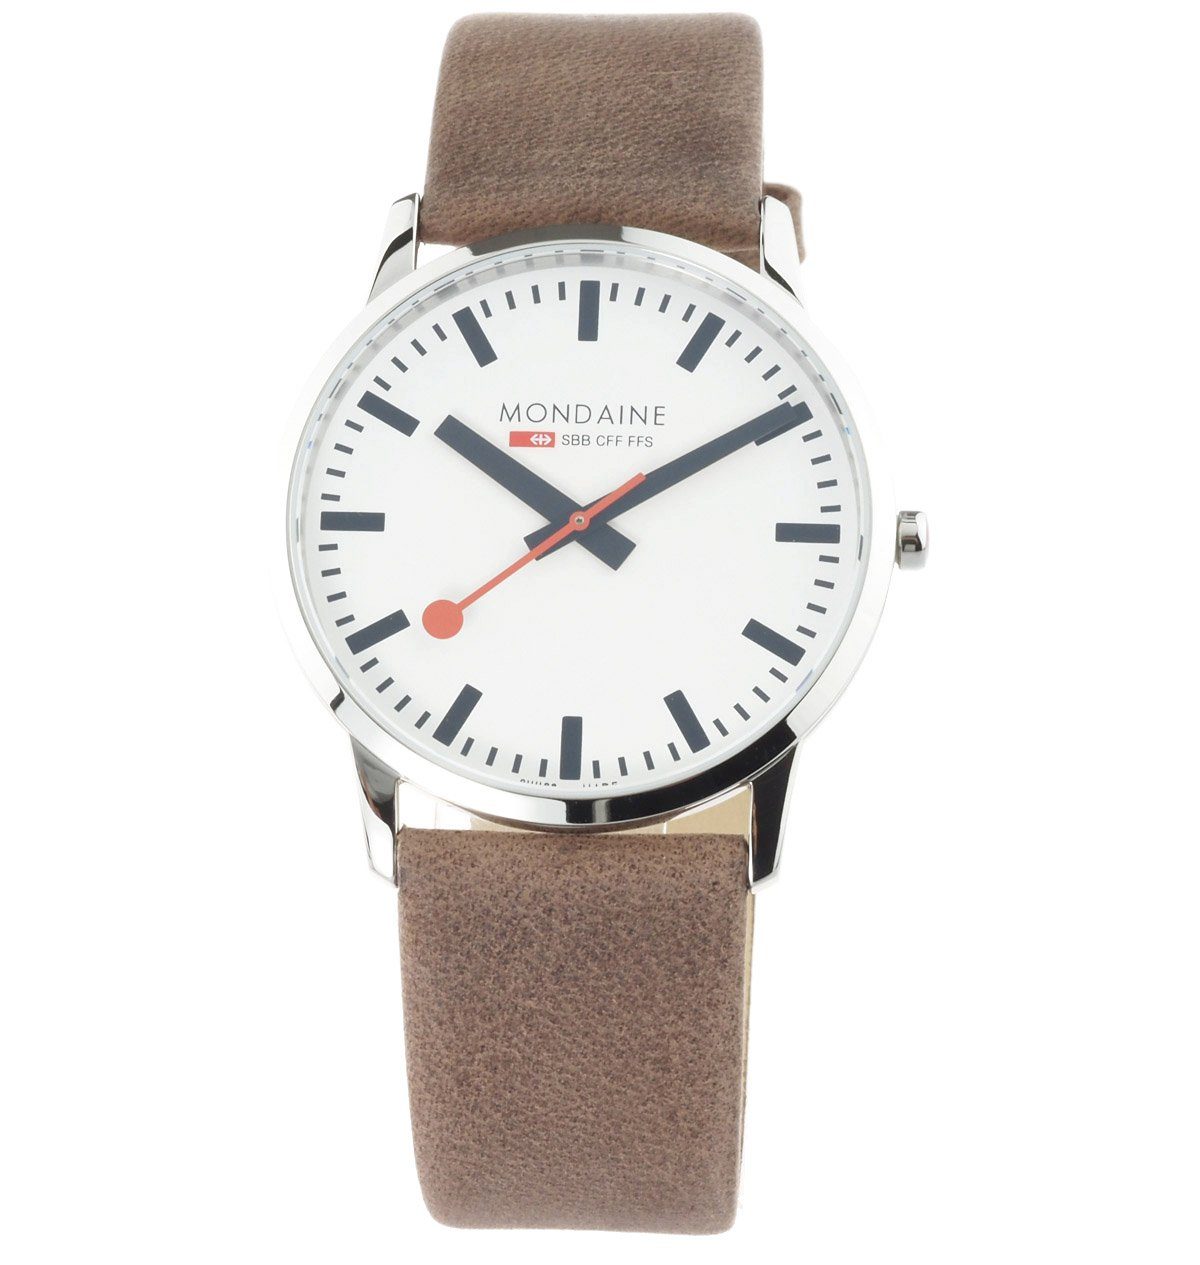 MONDAINE Schweizer Uhr Herren Uhr SBB SIMPLY A638.30350.12SBG 40 mm Ø Saphirglas Neu, Superflach